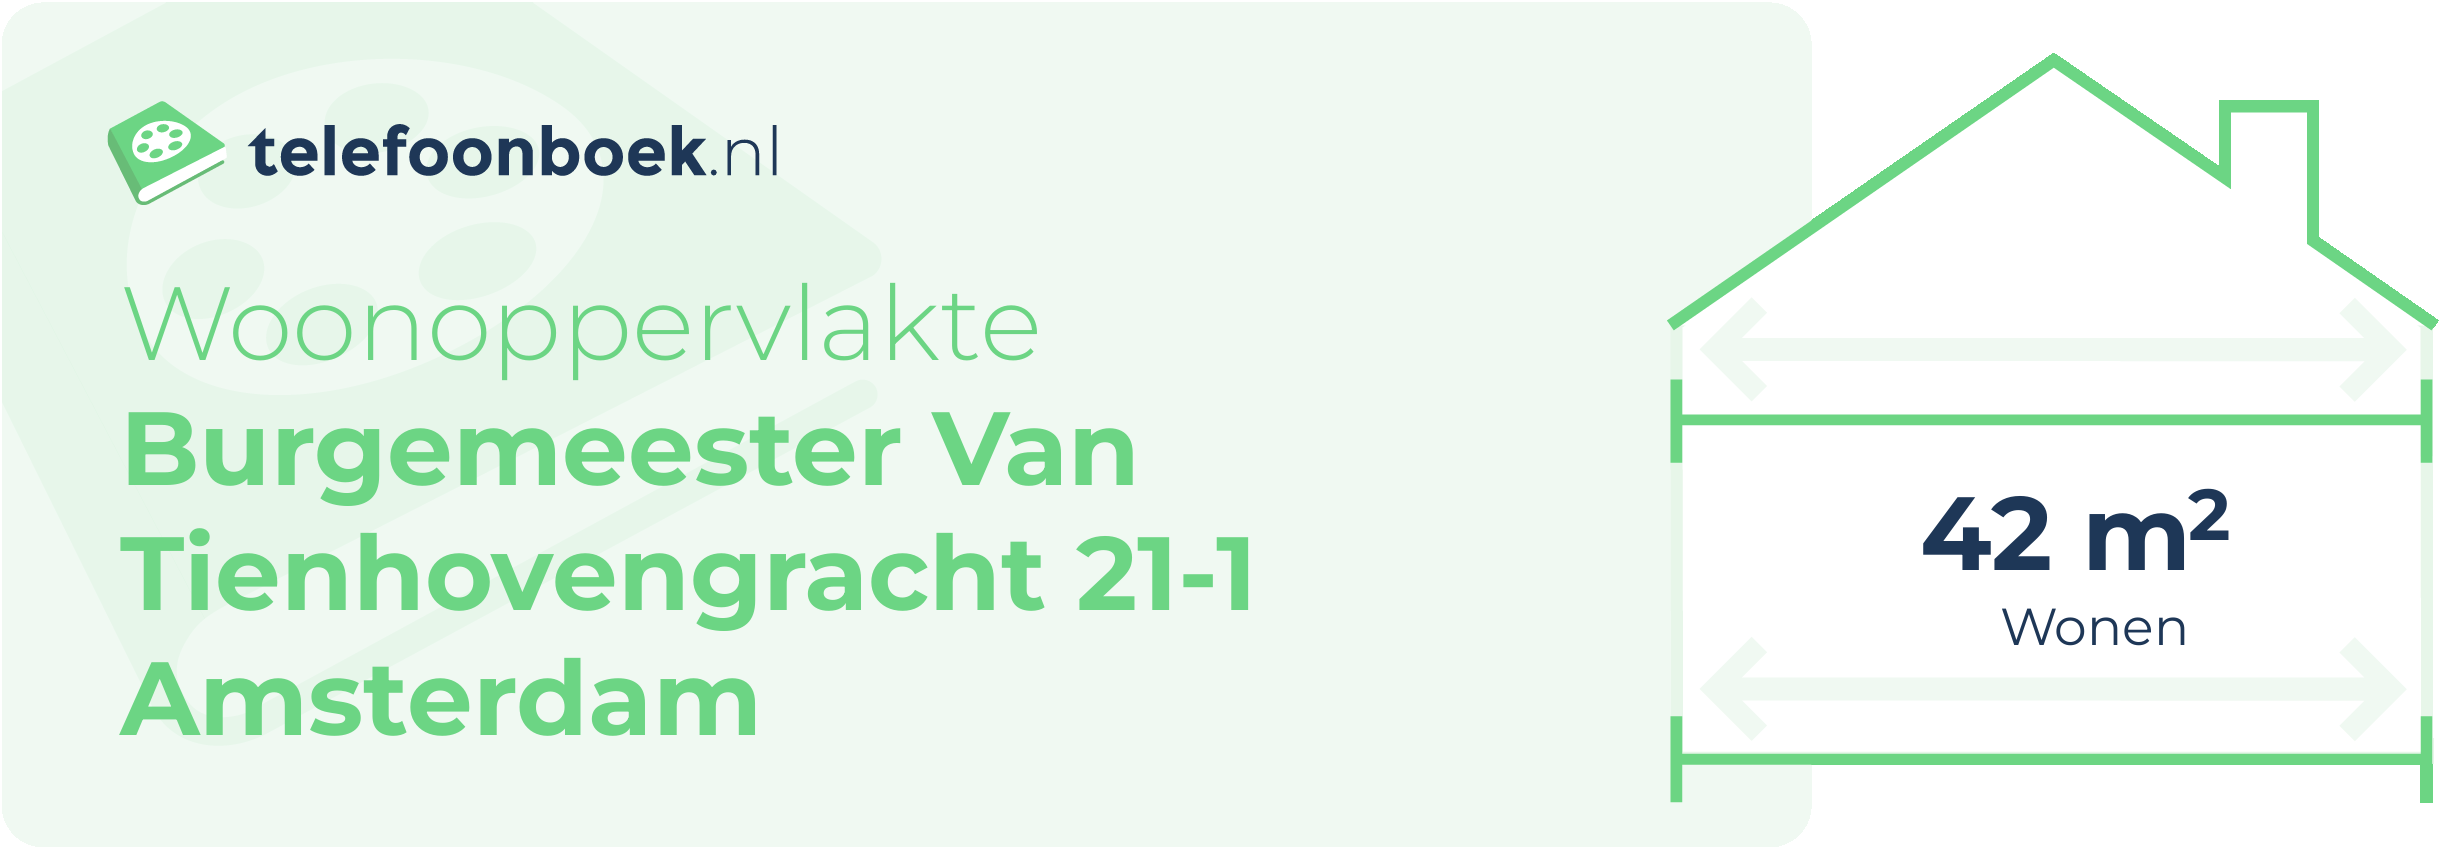 Woonoppervlakte Burgemeester Van Tienhovengracht 21-1 Amsterdam